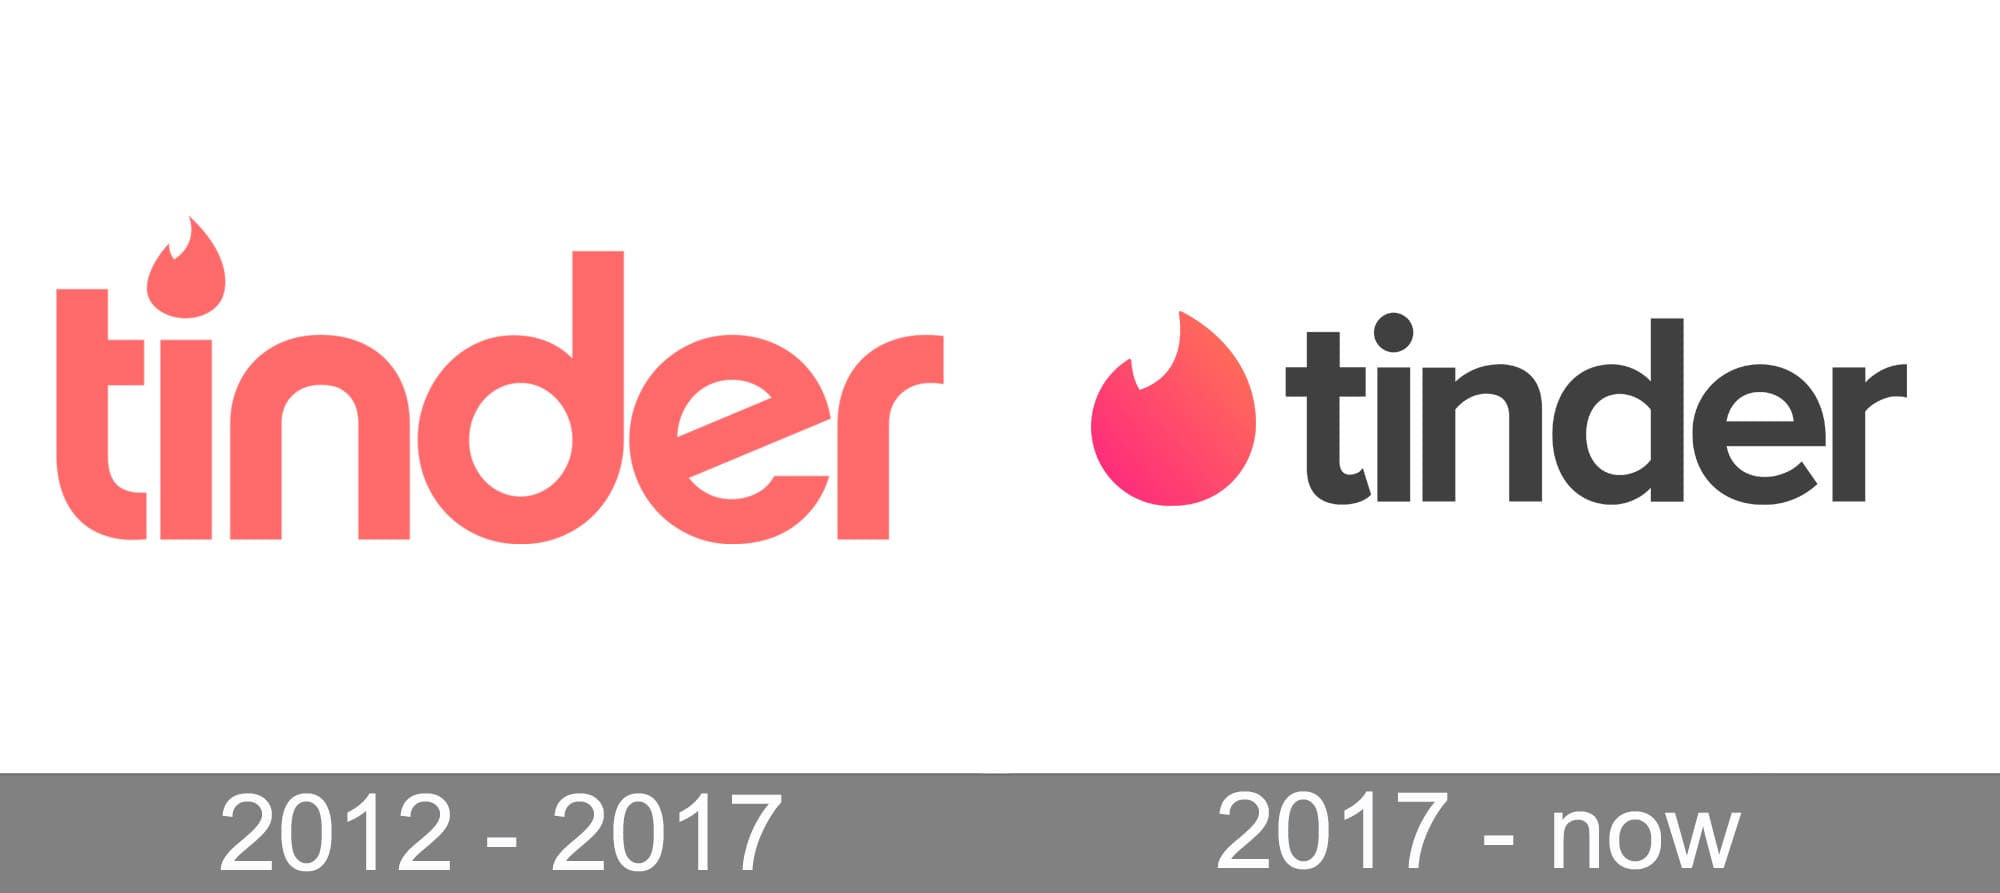 Tinder App Tinder Logo Png : Download this free icon about tinder logo